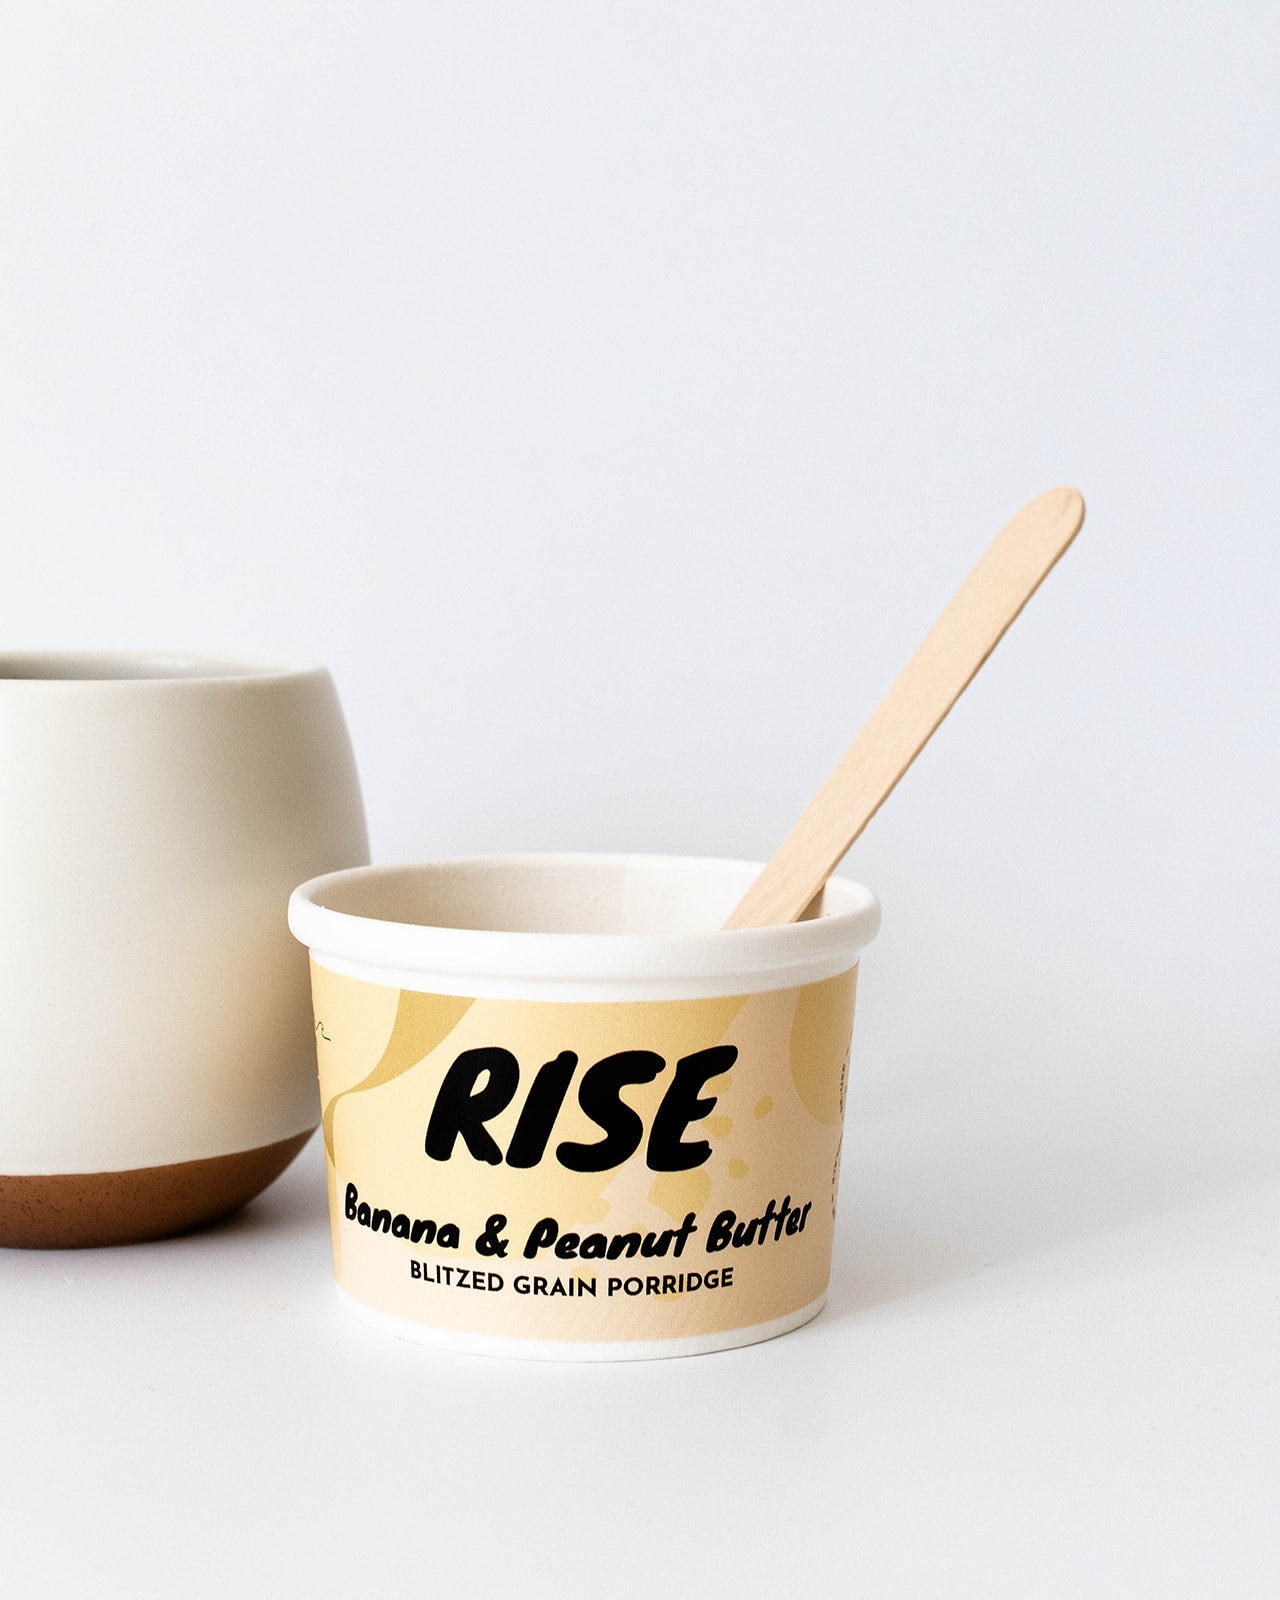 RISE - Banana & Peanut Butter Blitzed Grain Porridge // Stores Supply // Rise